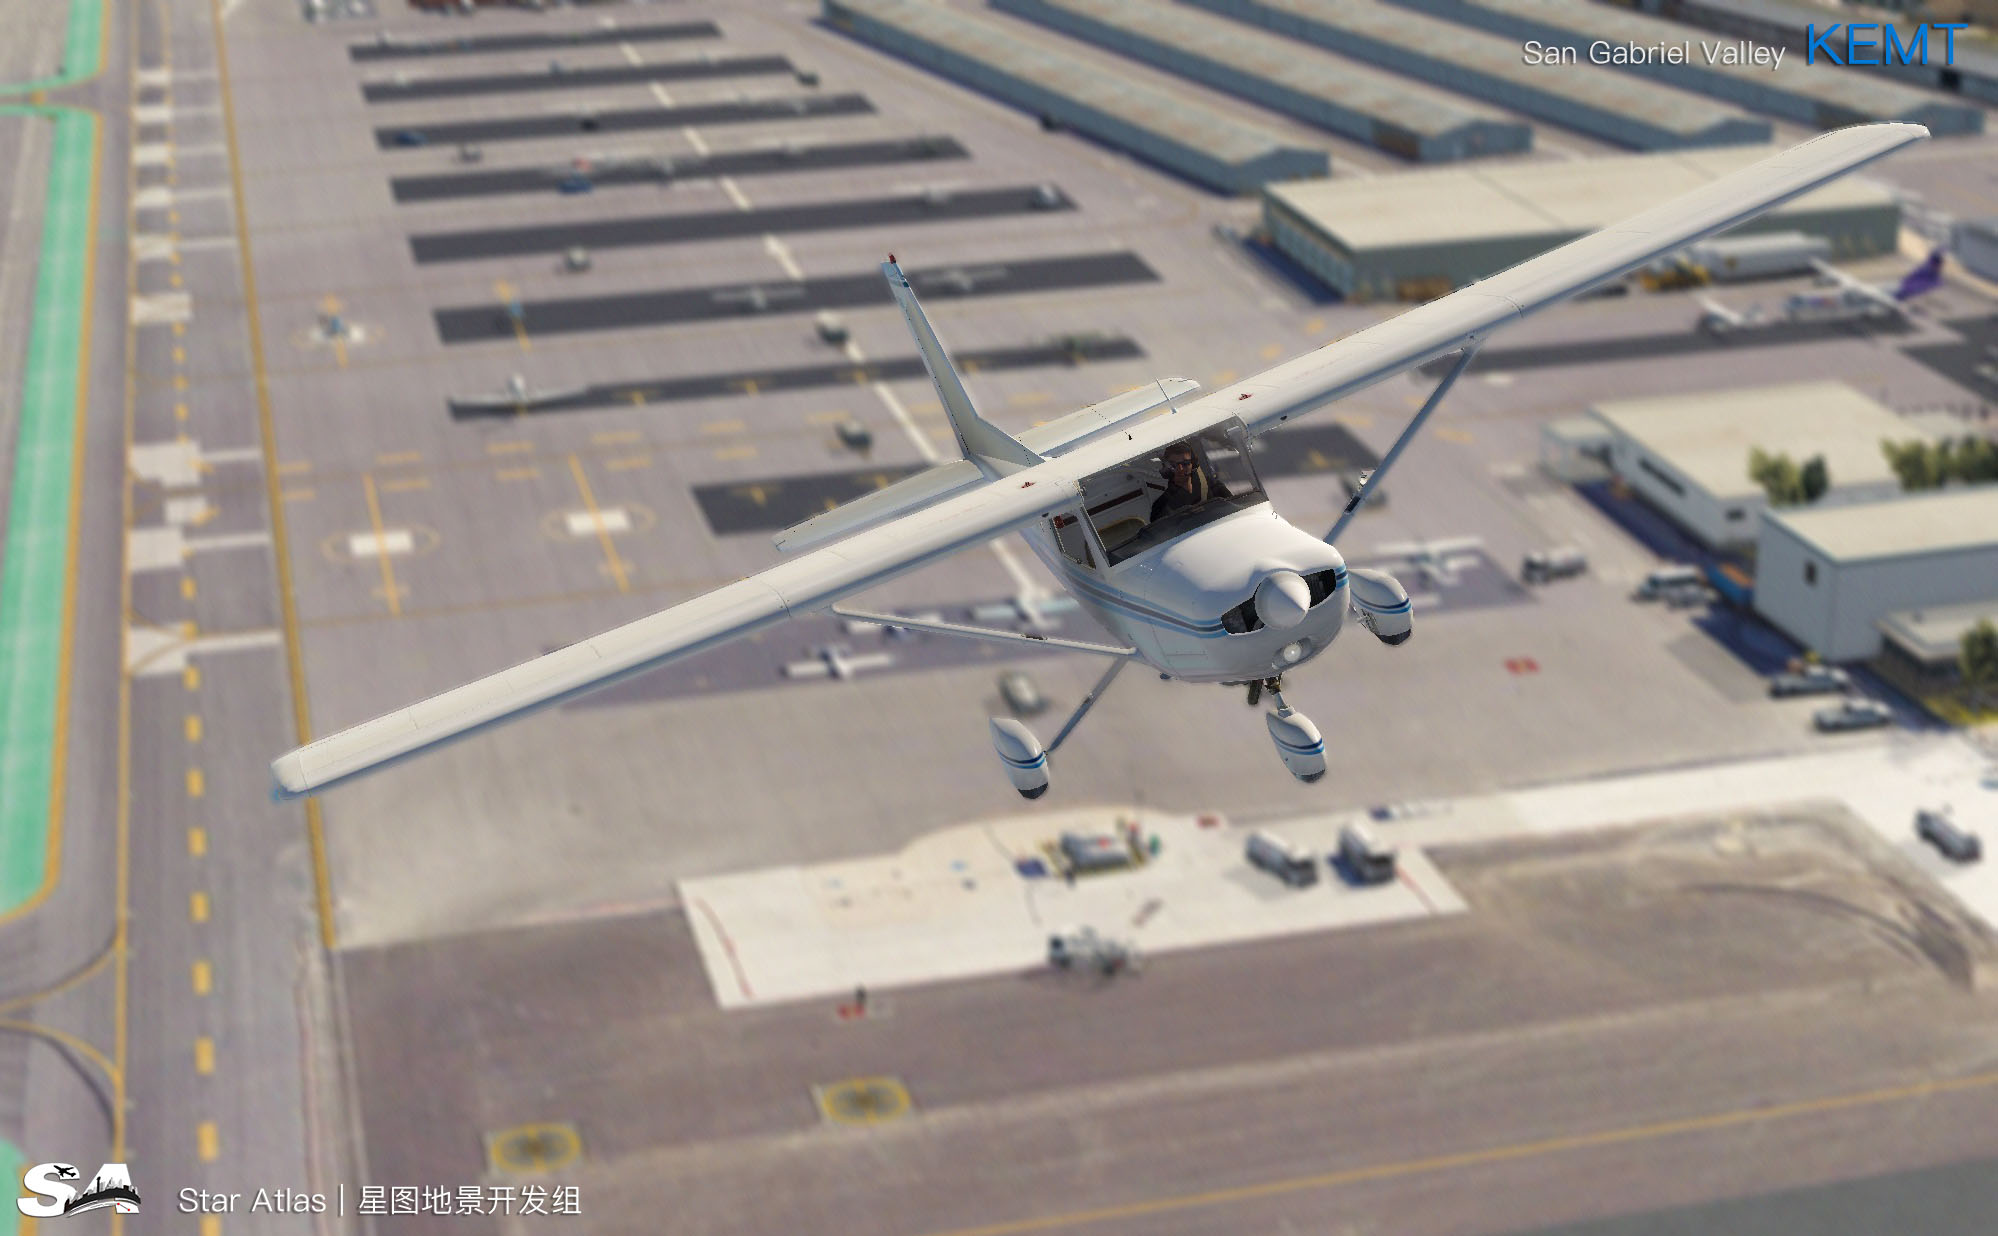 【X-Plane】KEMT-圣盖博谷机场 HD 1.0-2824 